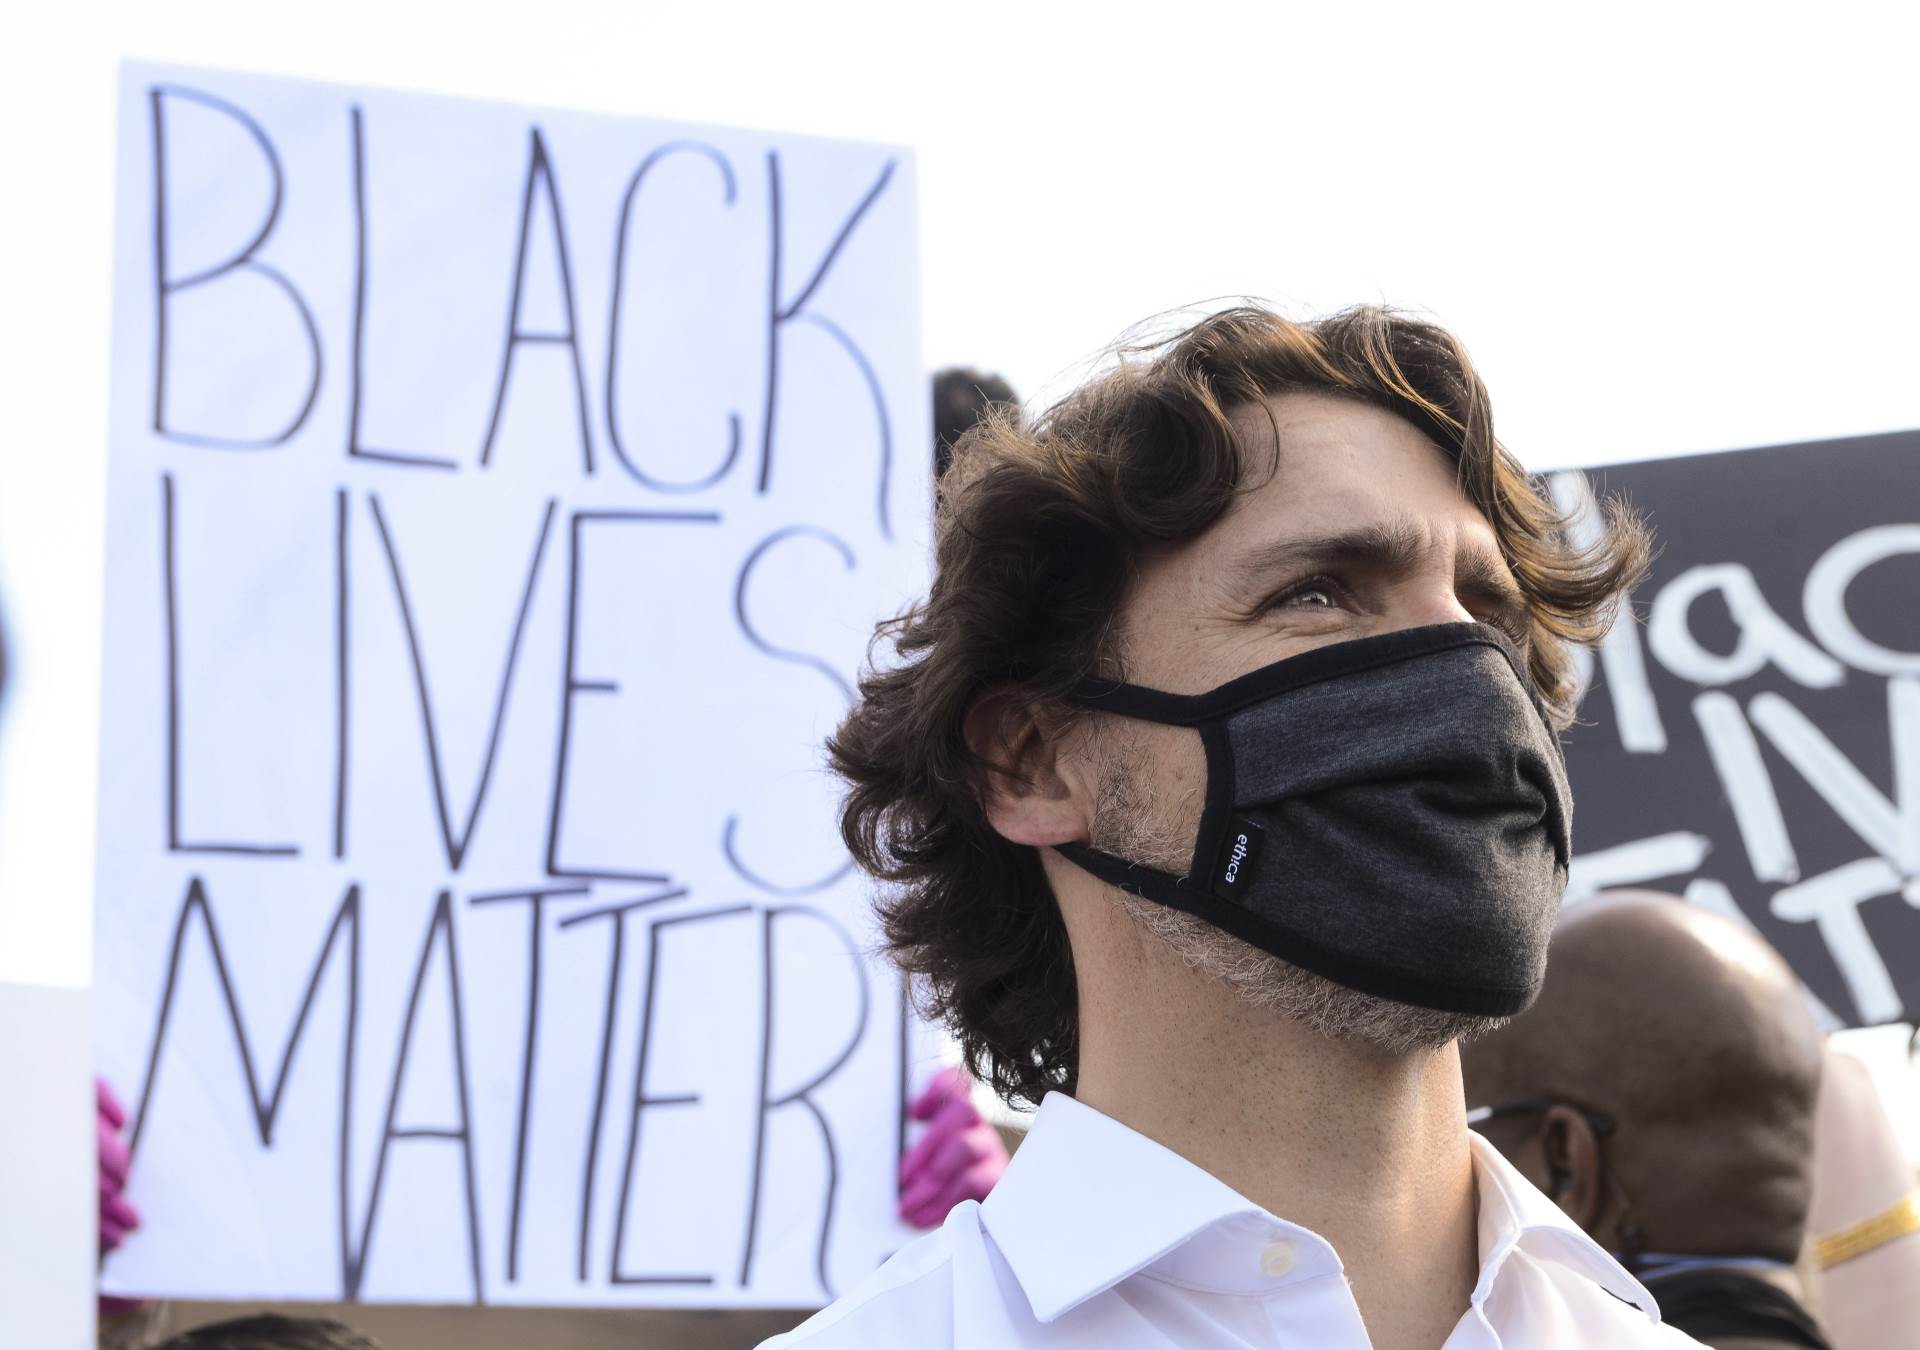  Premijer Kanade Džastin TRudo kleknuo u znak solidarnosti zbog ubistva Džordža FlojdaTrudo je 